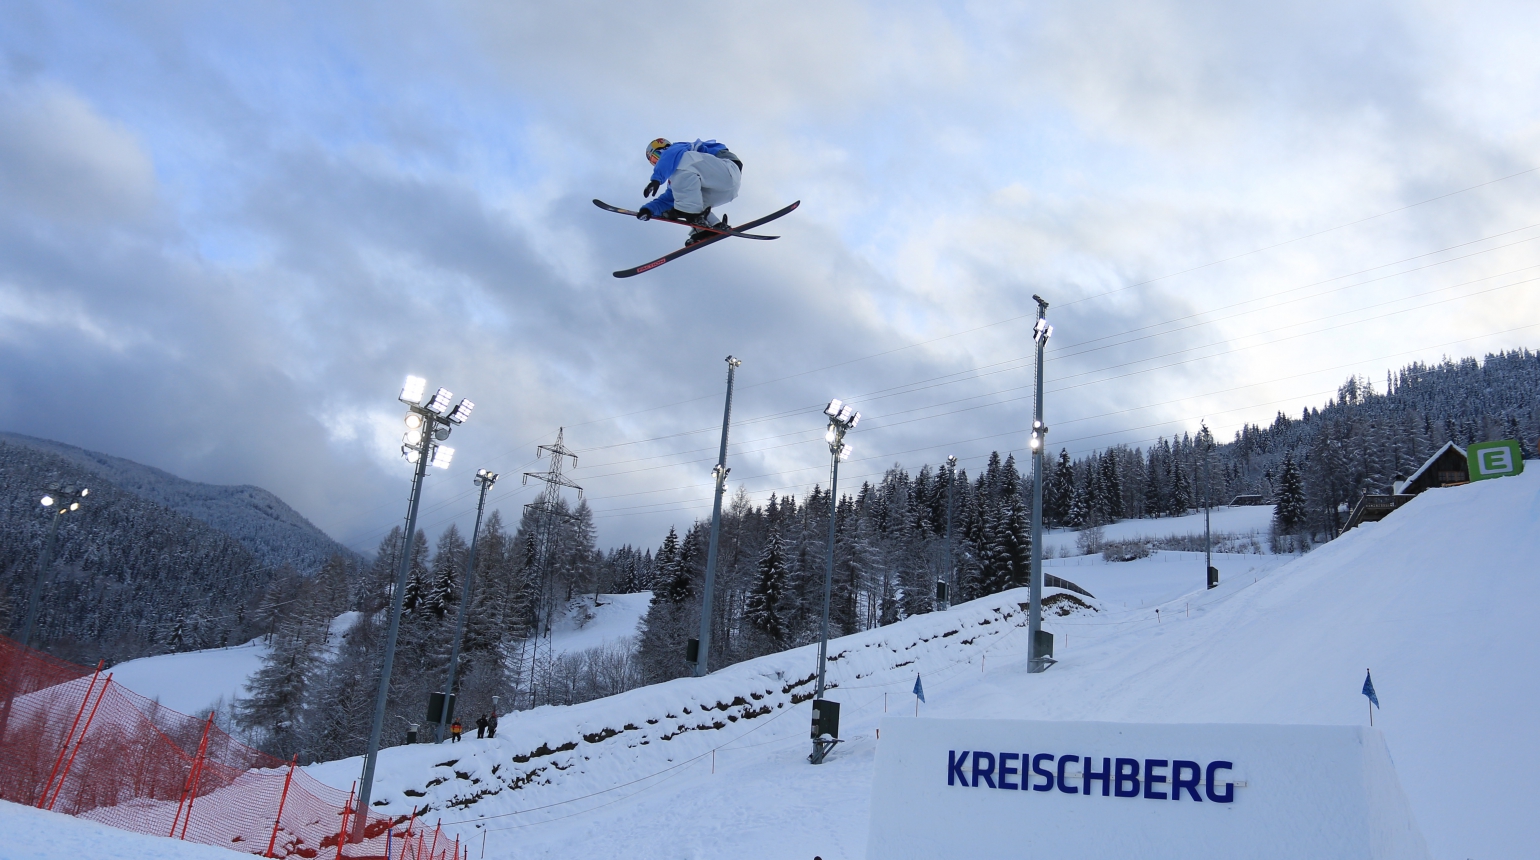 Švancer zazářil na Big Airu v Kreischbergu! Šesté místo a první TOP 10 ve Světovém poháru kariéry